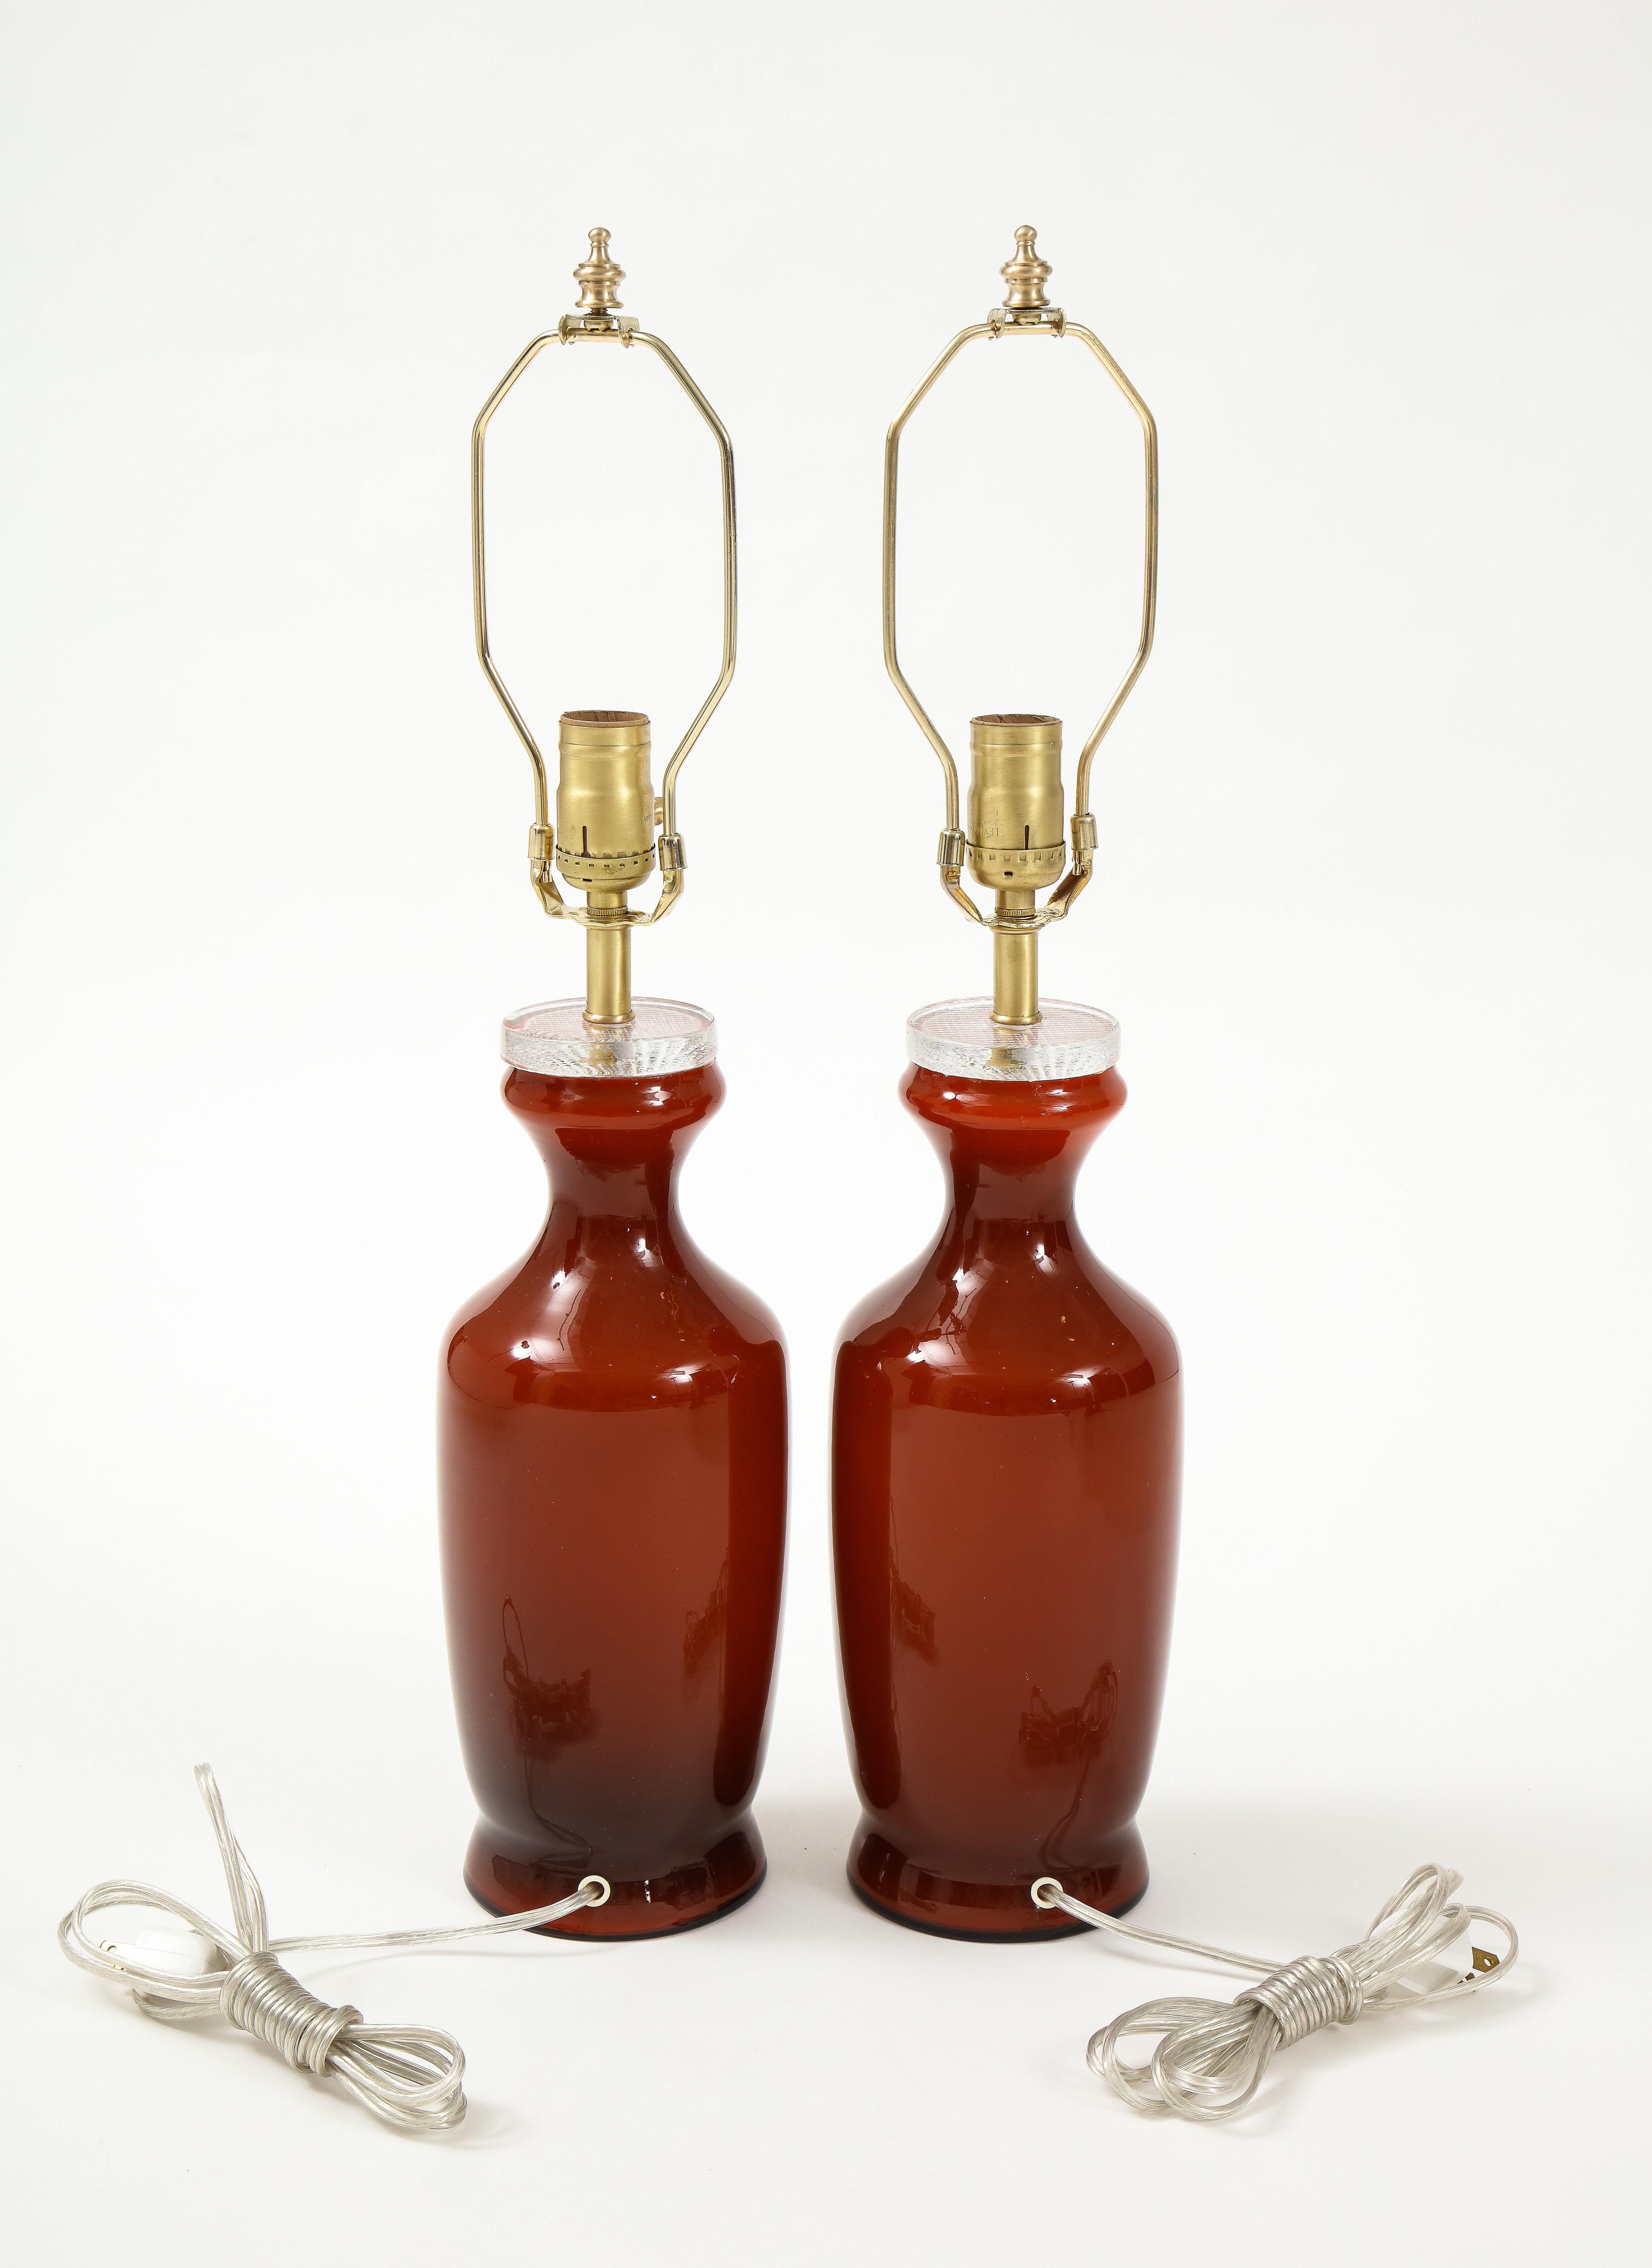 Paire de lampes en verre Modern Scandinavian dans une merveilleuse couleur orange/rouge brûlée avec des raccords en laiton. Ampoules de 100W max. Recâblé pour une utilisation aux USA.